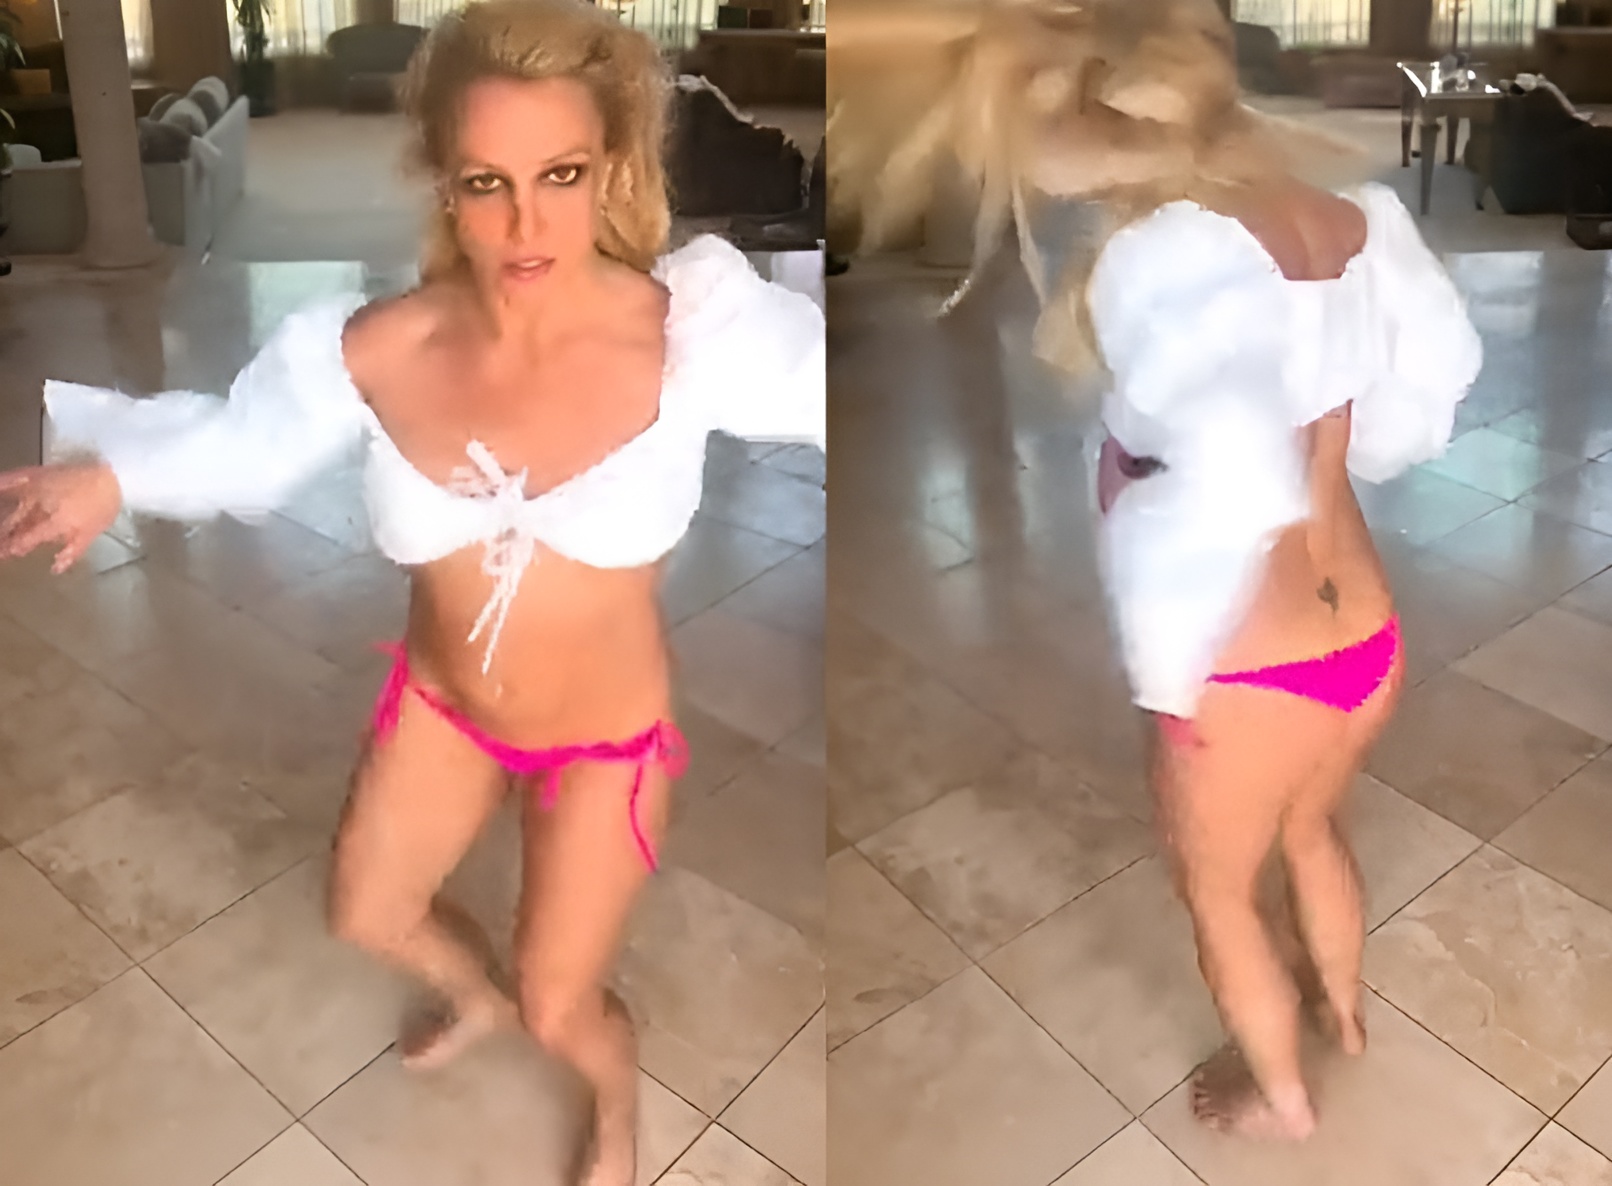 بريتني سبيرز ترقص شبه عارية وتغطي عورتها فقط لإنعاش حسابها على "تويتر" (فيديو)